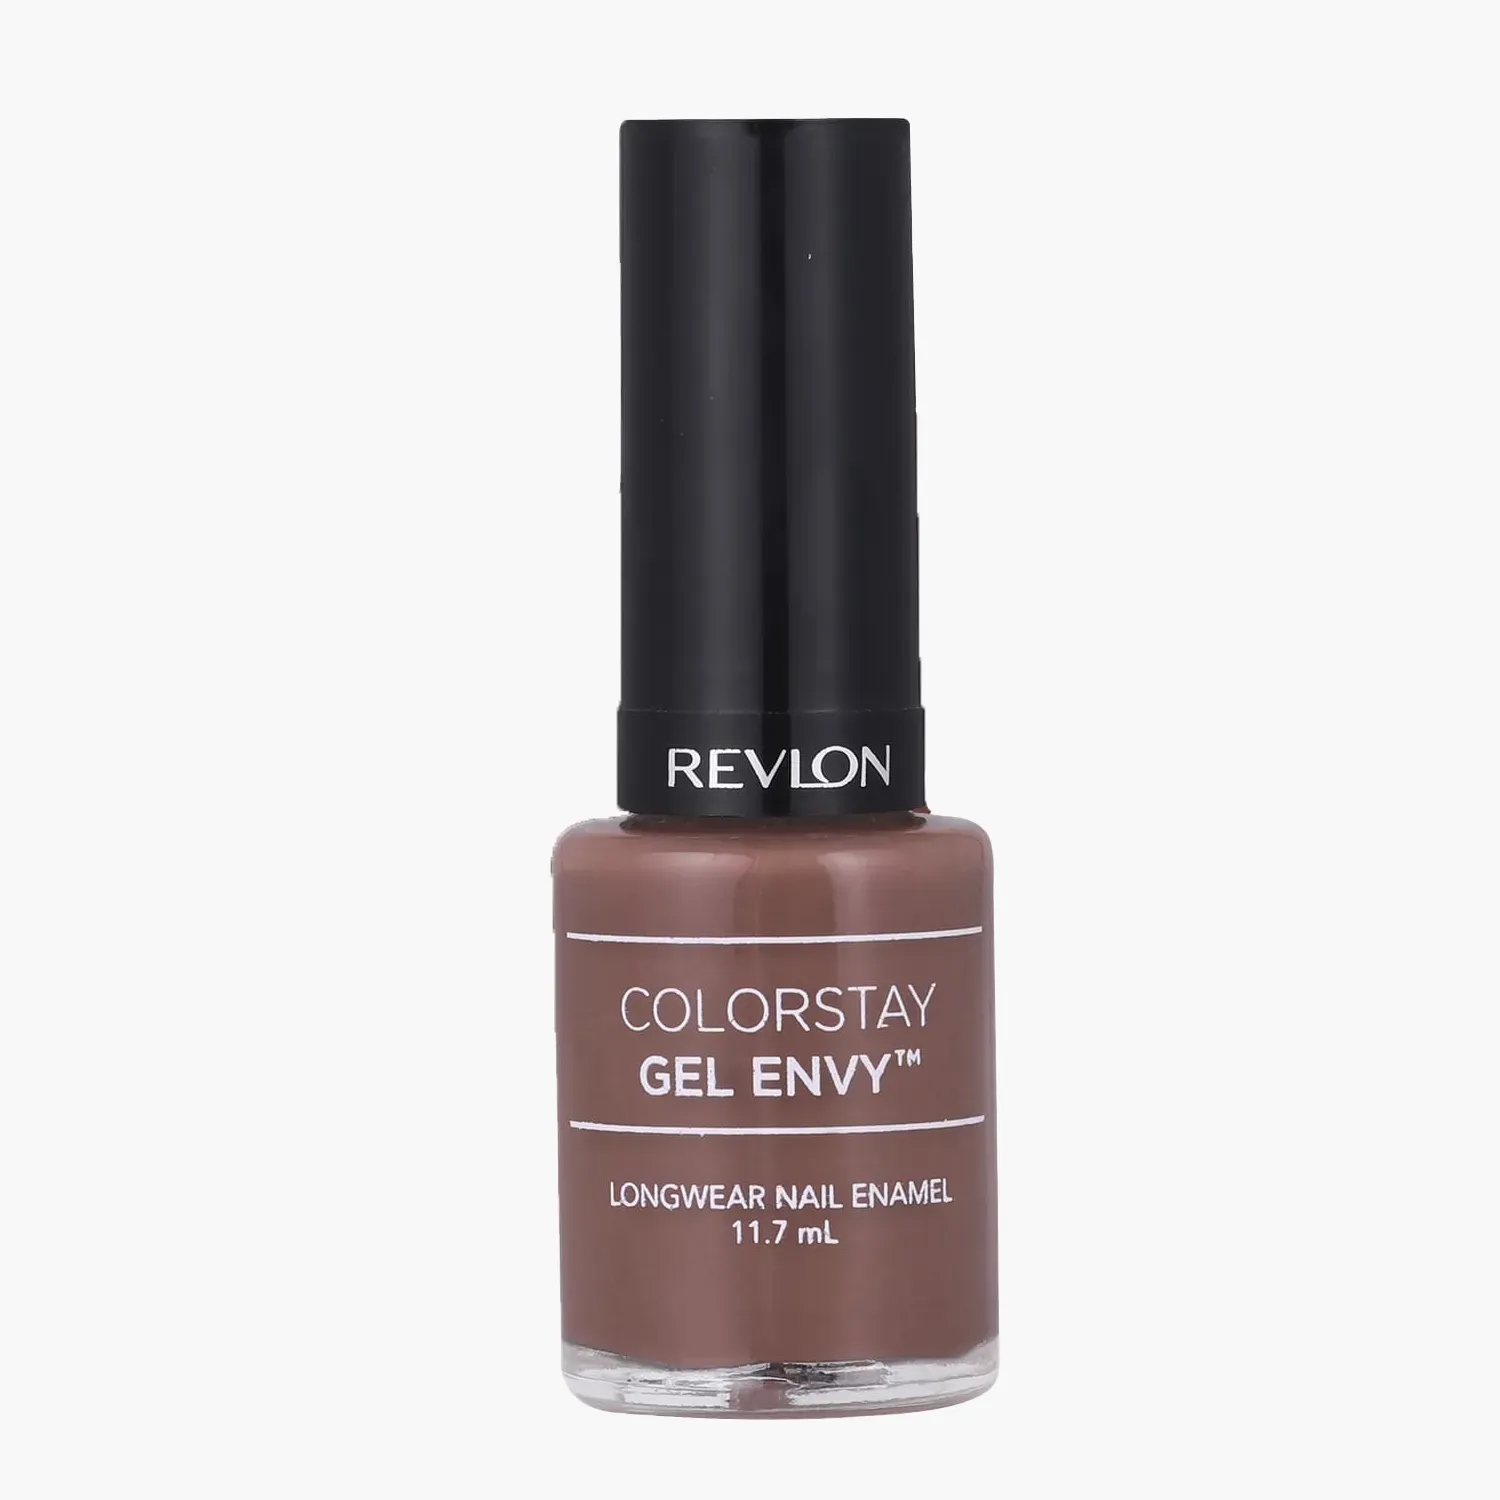 Revlon Colorstay Gel Envy Longwear Nail Enamel | FragranceNet.com®